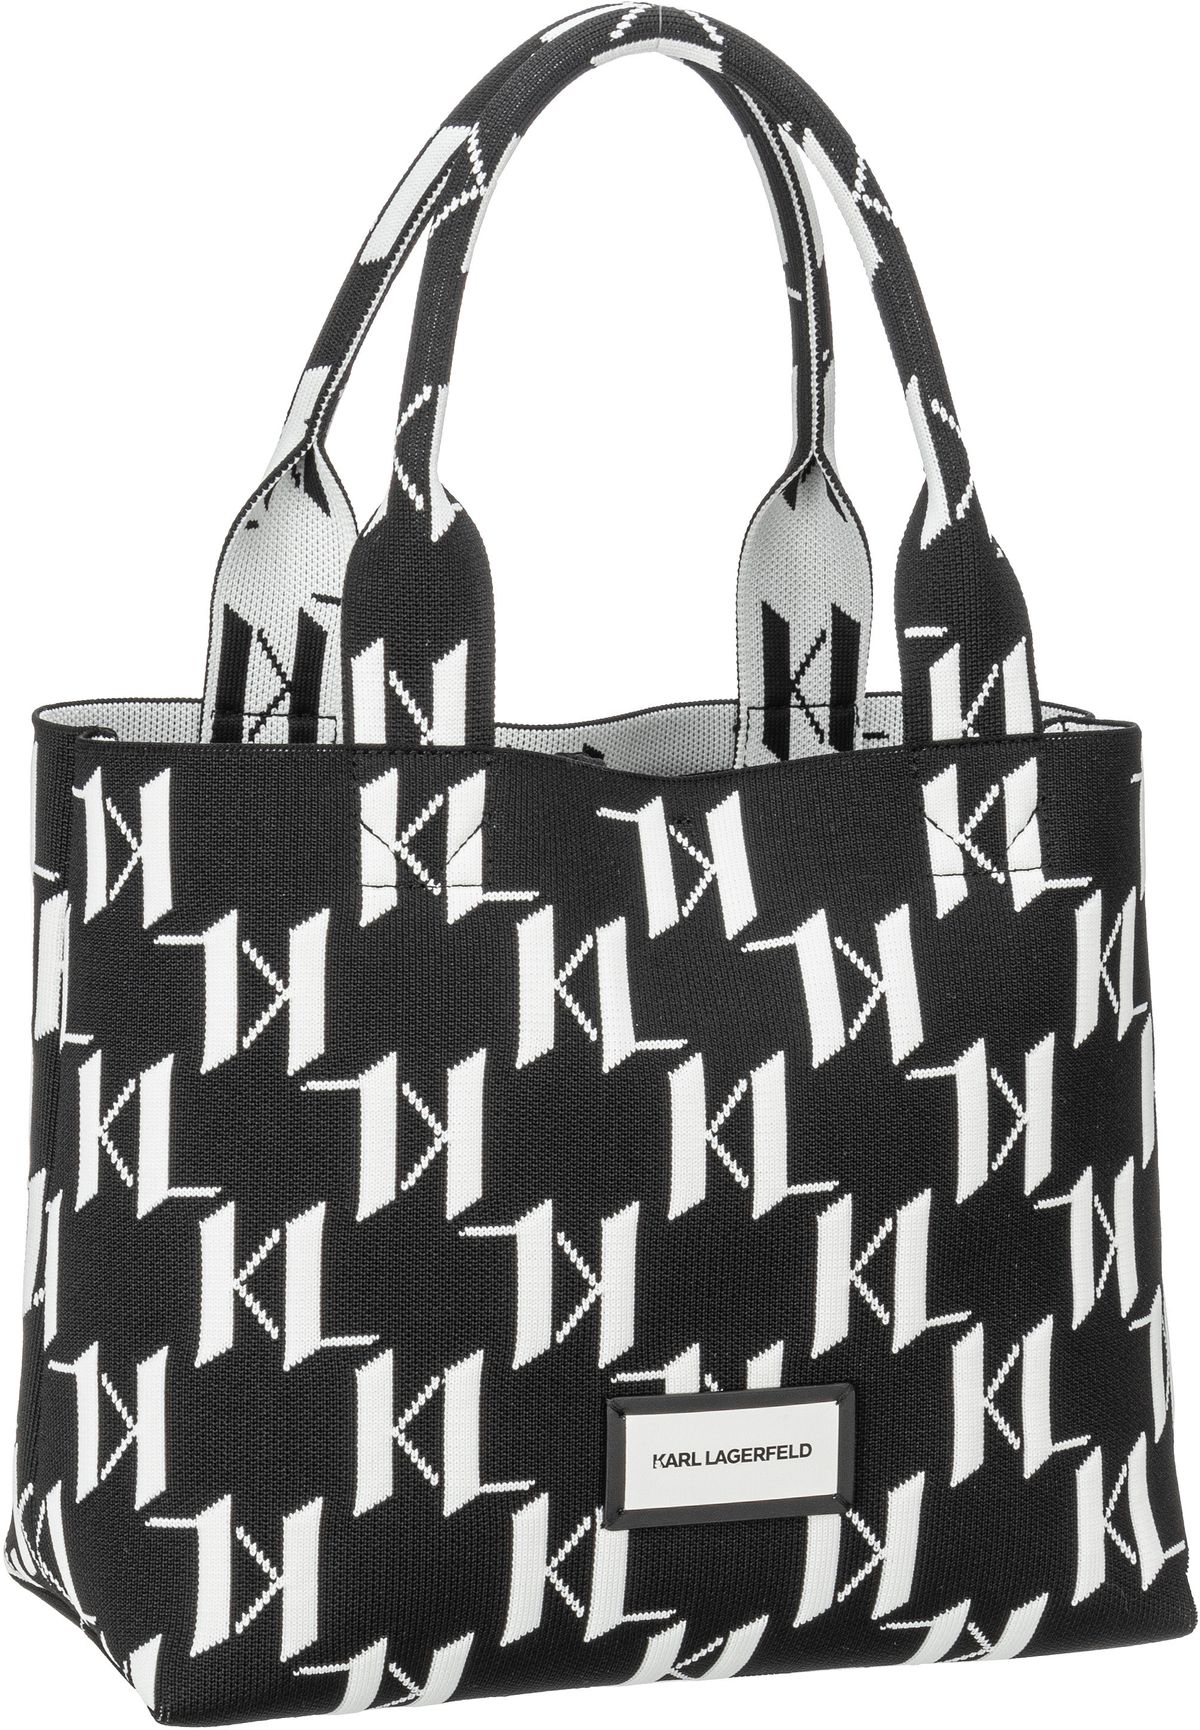 Karl Lagerfeld K/Monogram Knit MD 241W3033  in Black/White (11.7 Liter), Handtasche